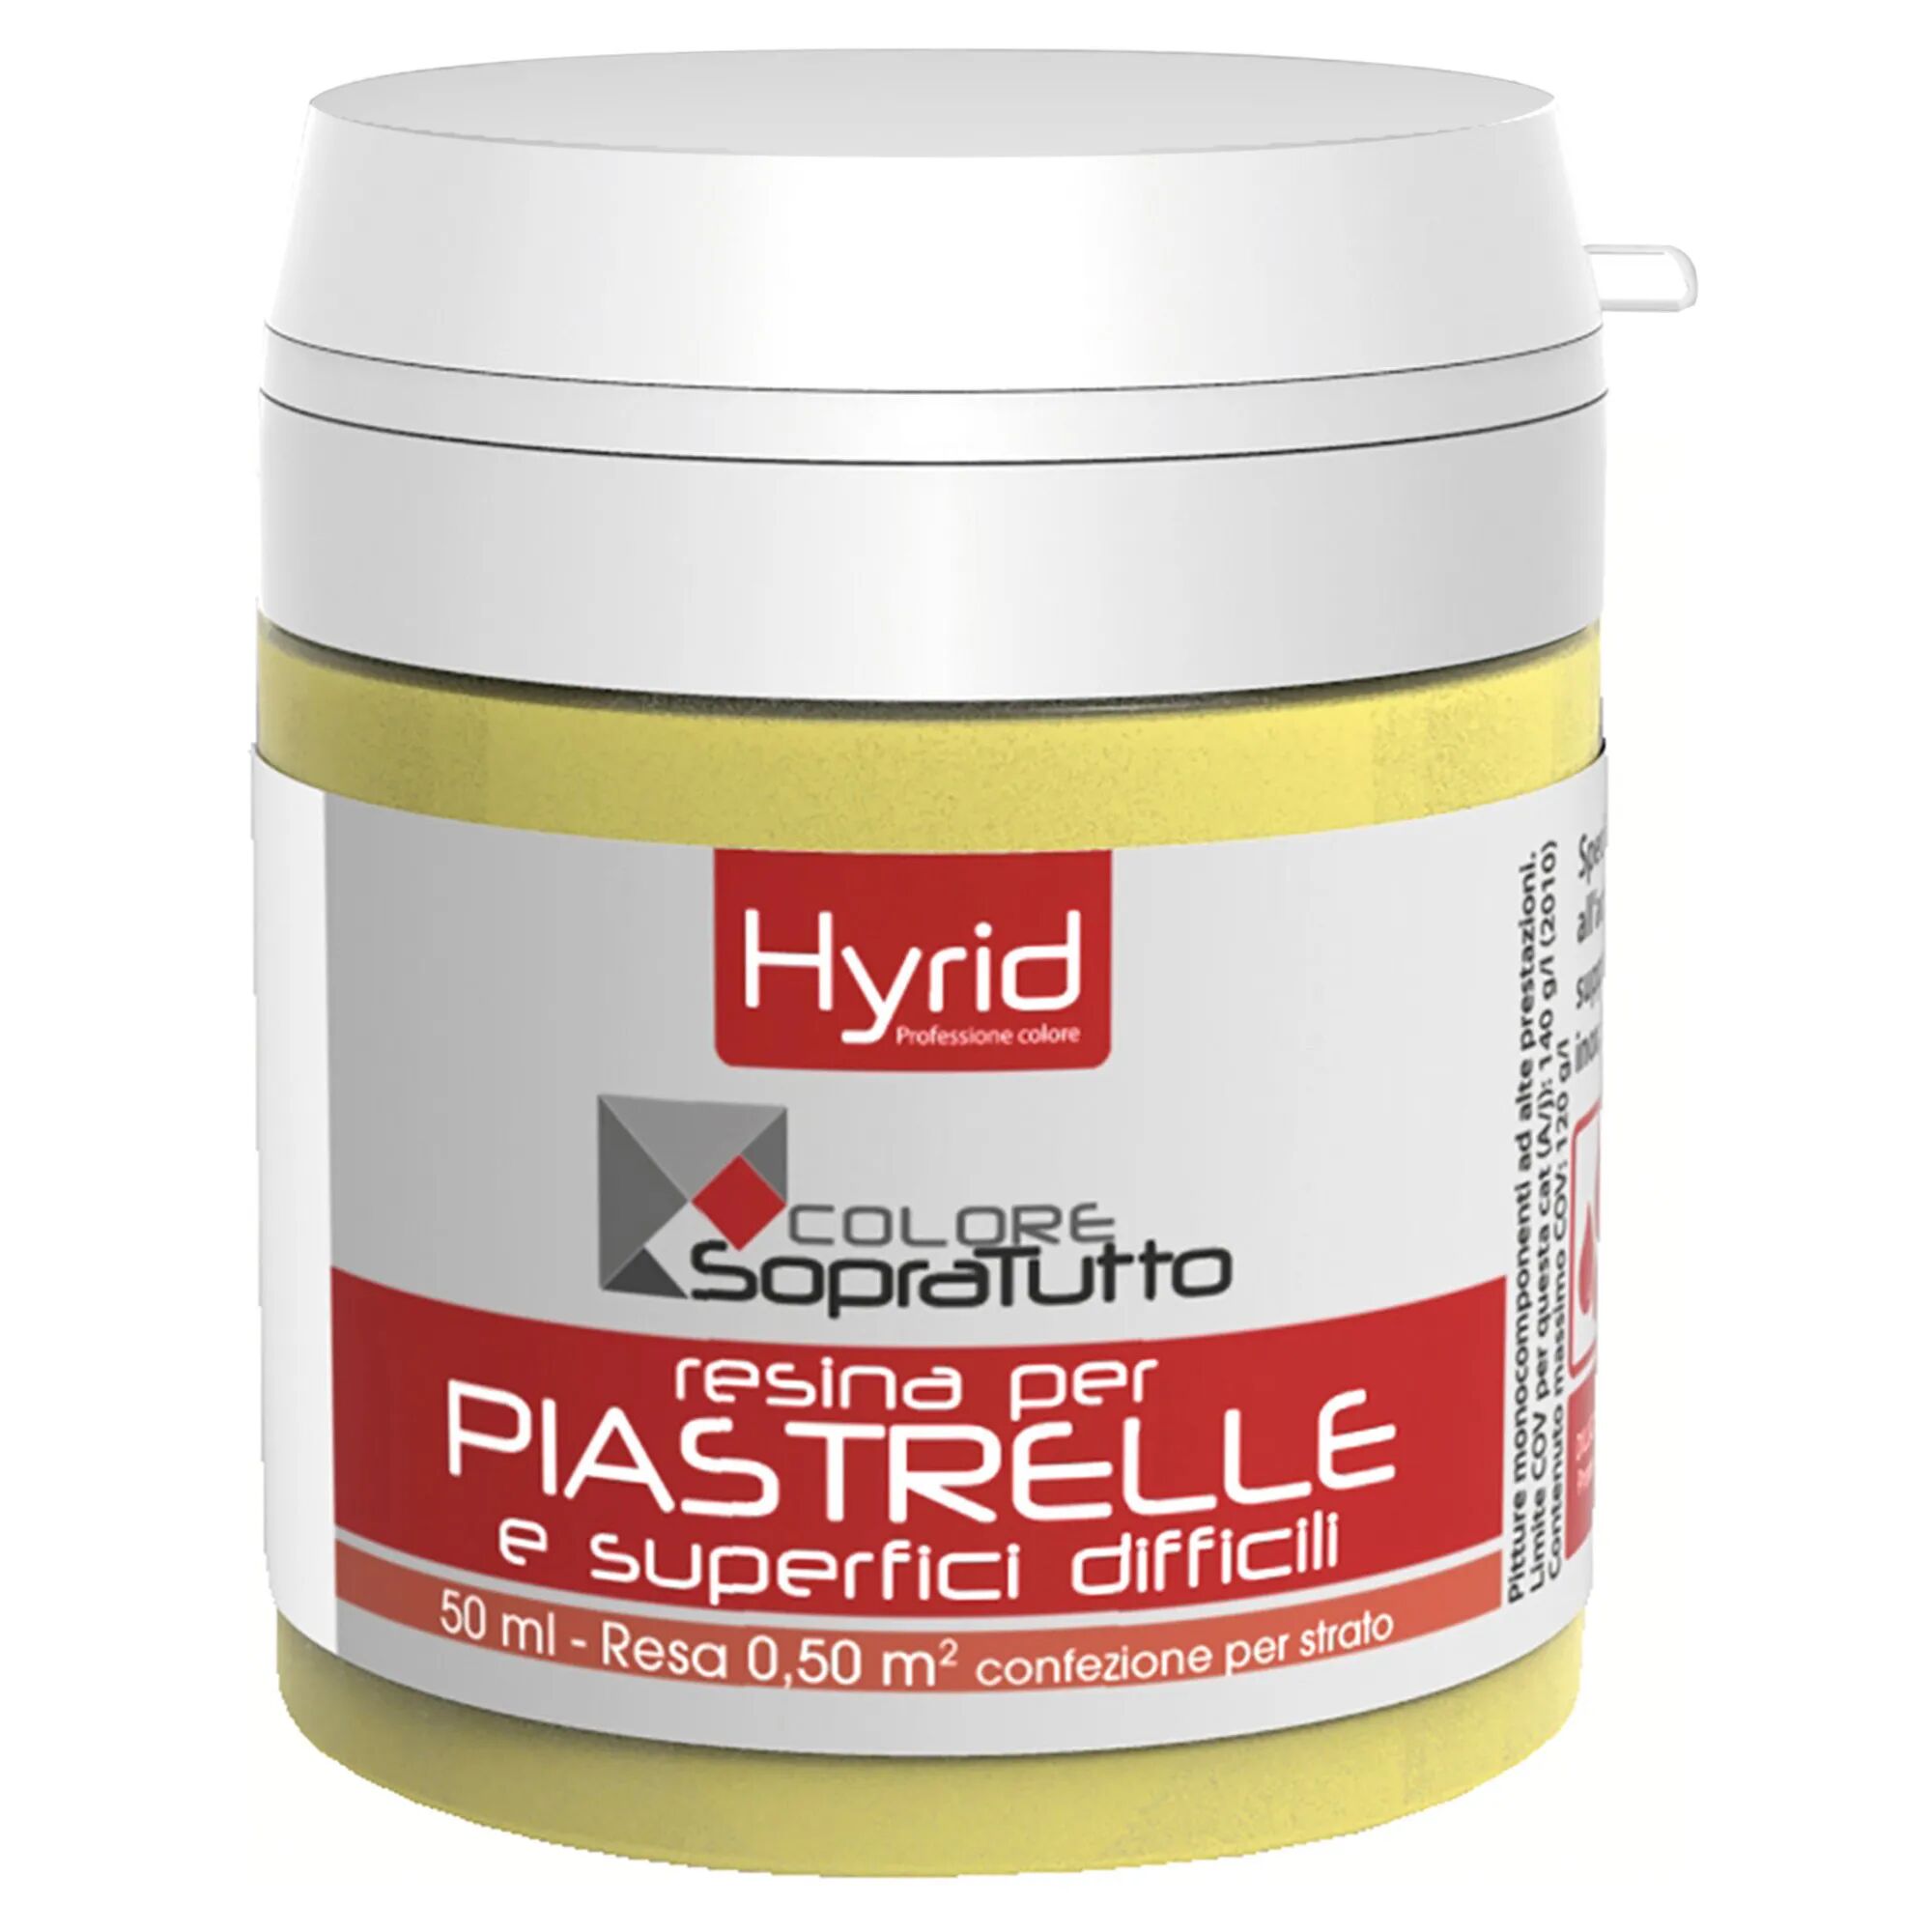 hyrid by covema resina piastrelle hyrid germoglio 50 ml per superfici difficili 10 m²  con 1 l pronto uso